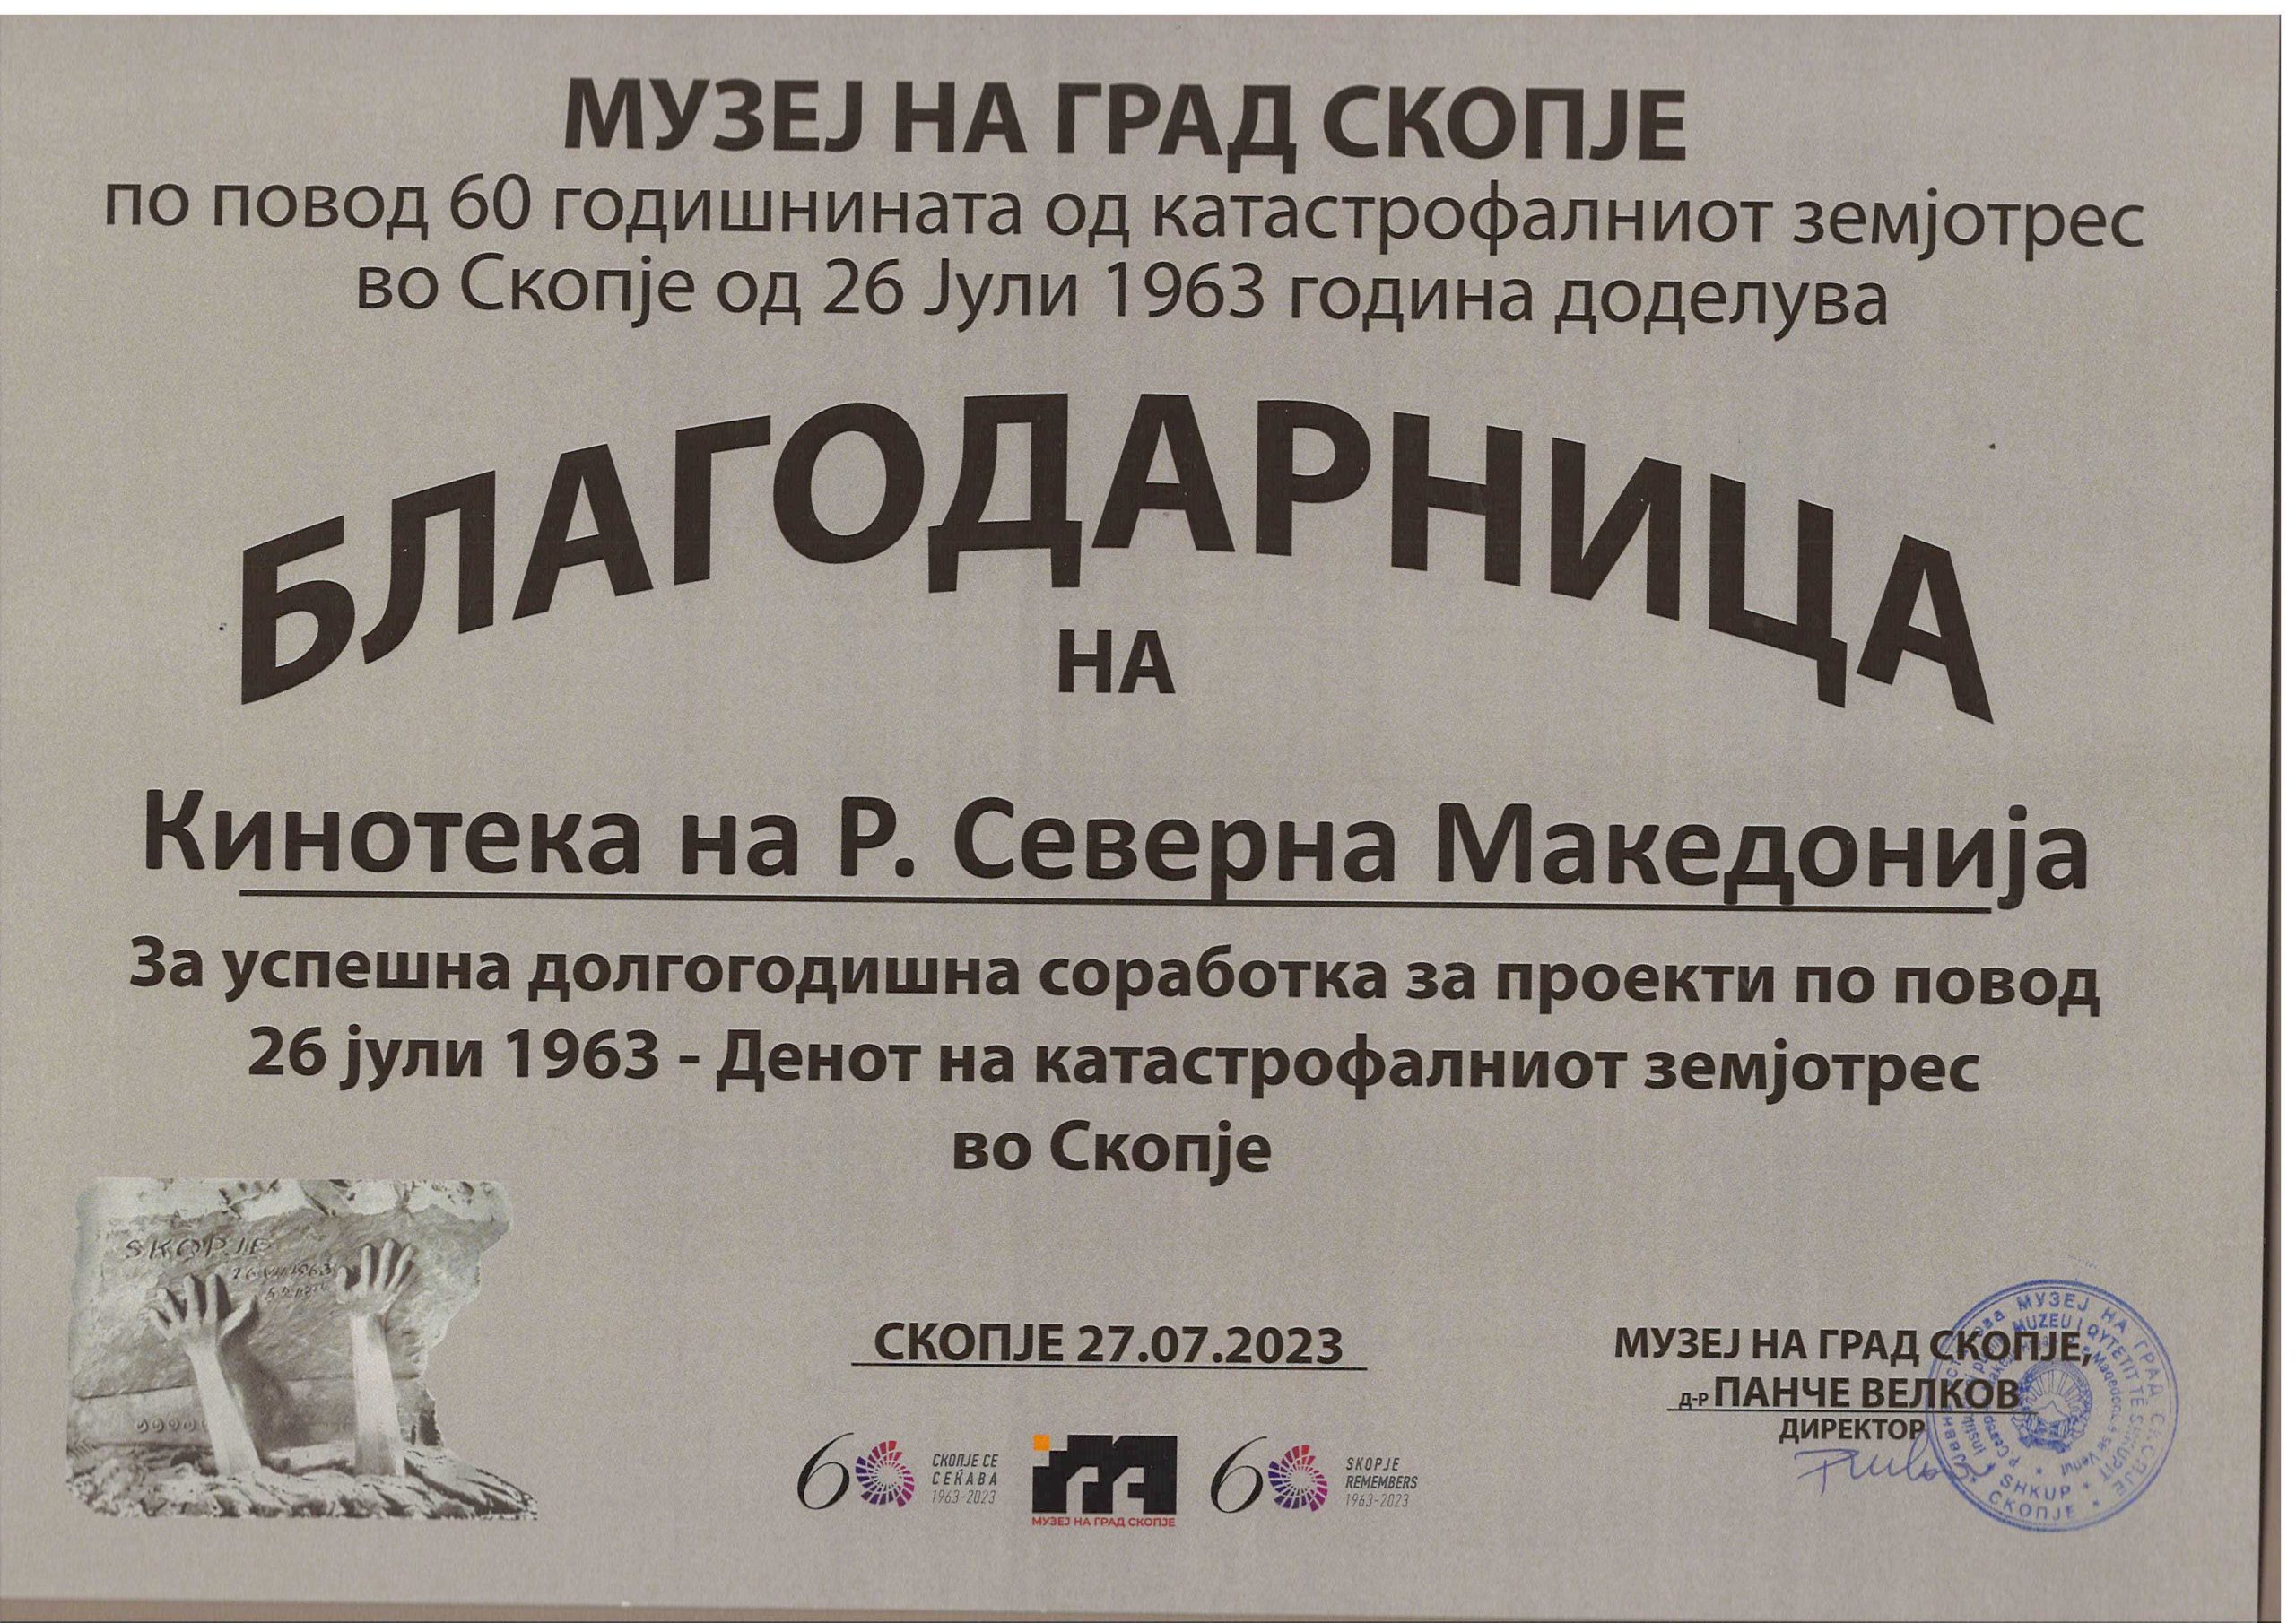 Музеј на Град Скопје по повод 60 годишнината од катастрофалниот земјотрес во Скопје од 26 јули 1963 година додели Благодарница на Кинотеката на Р. С. Македонија